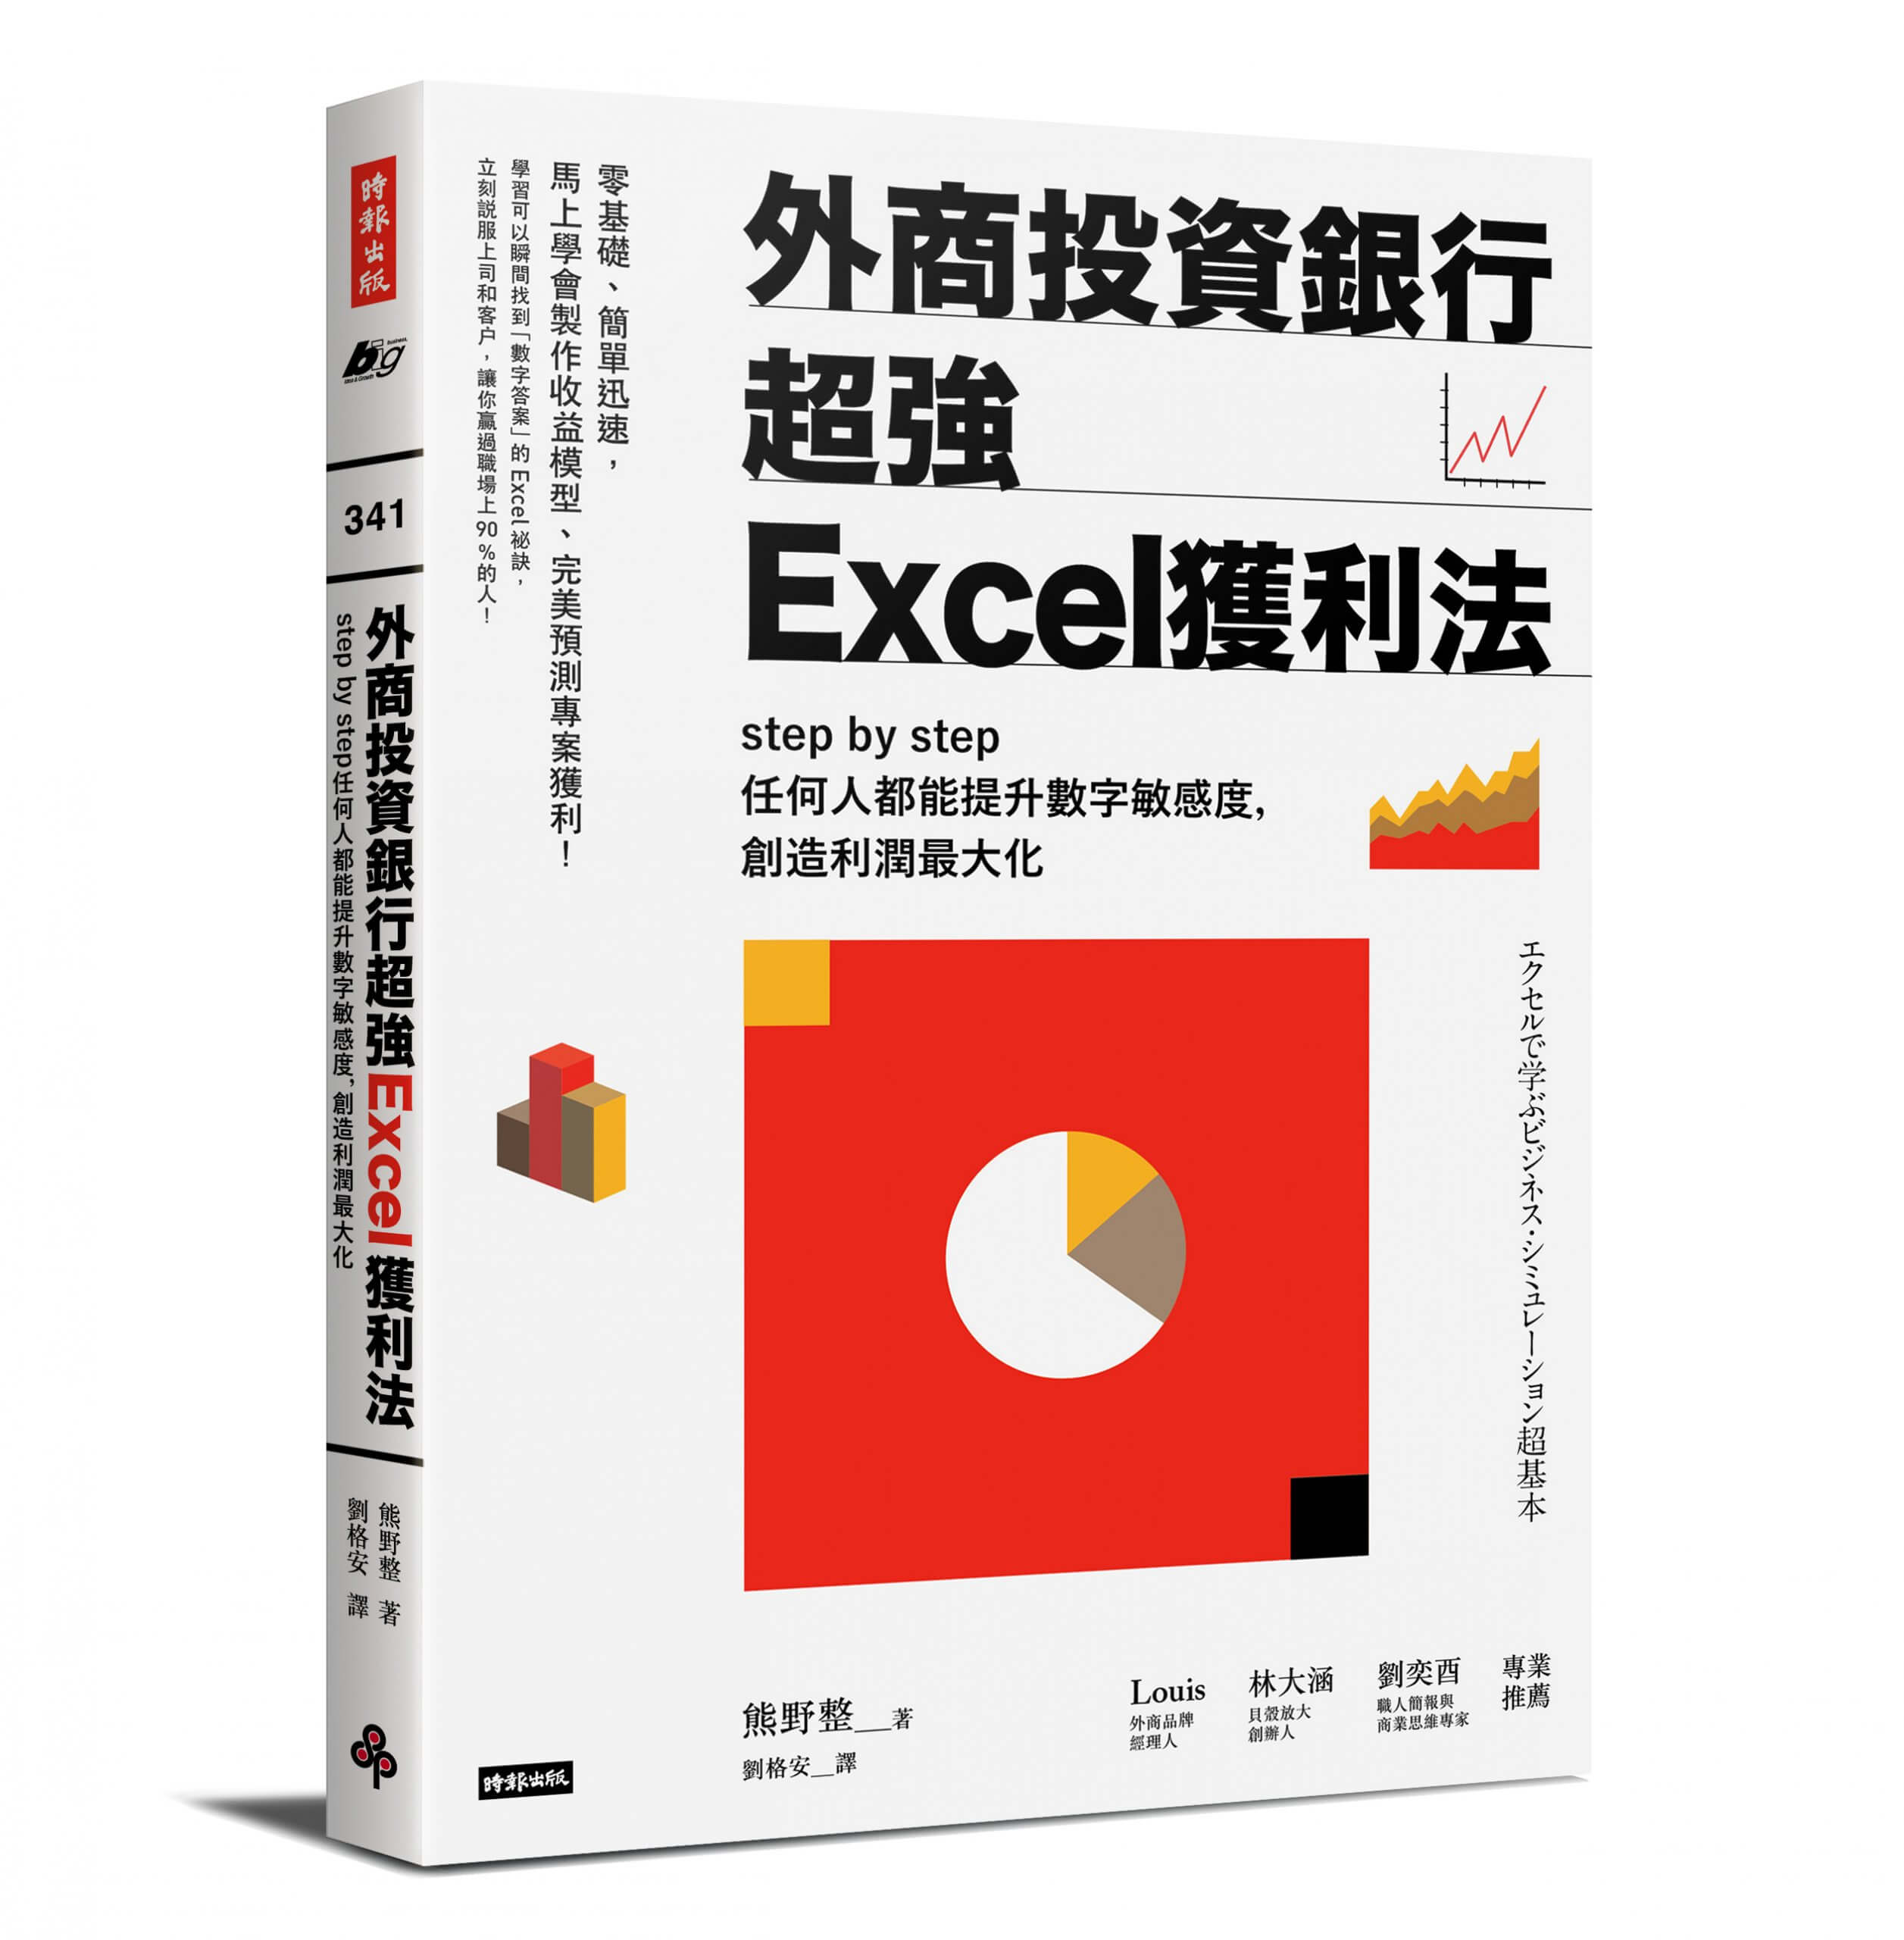 外商投資銀行超強Excel獲利法